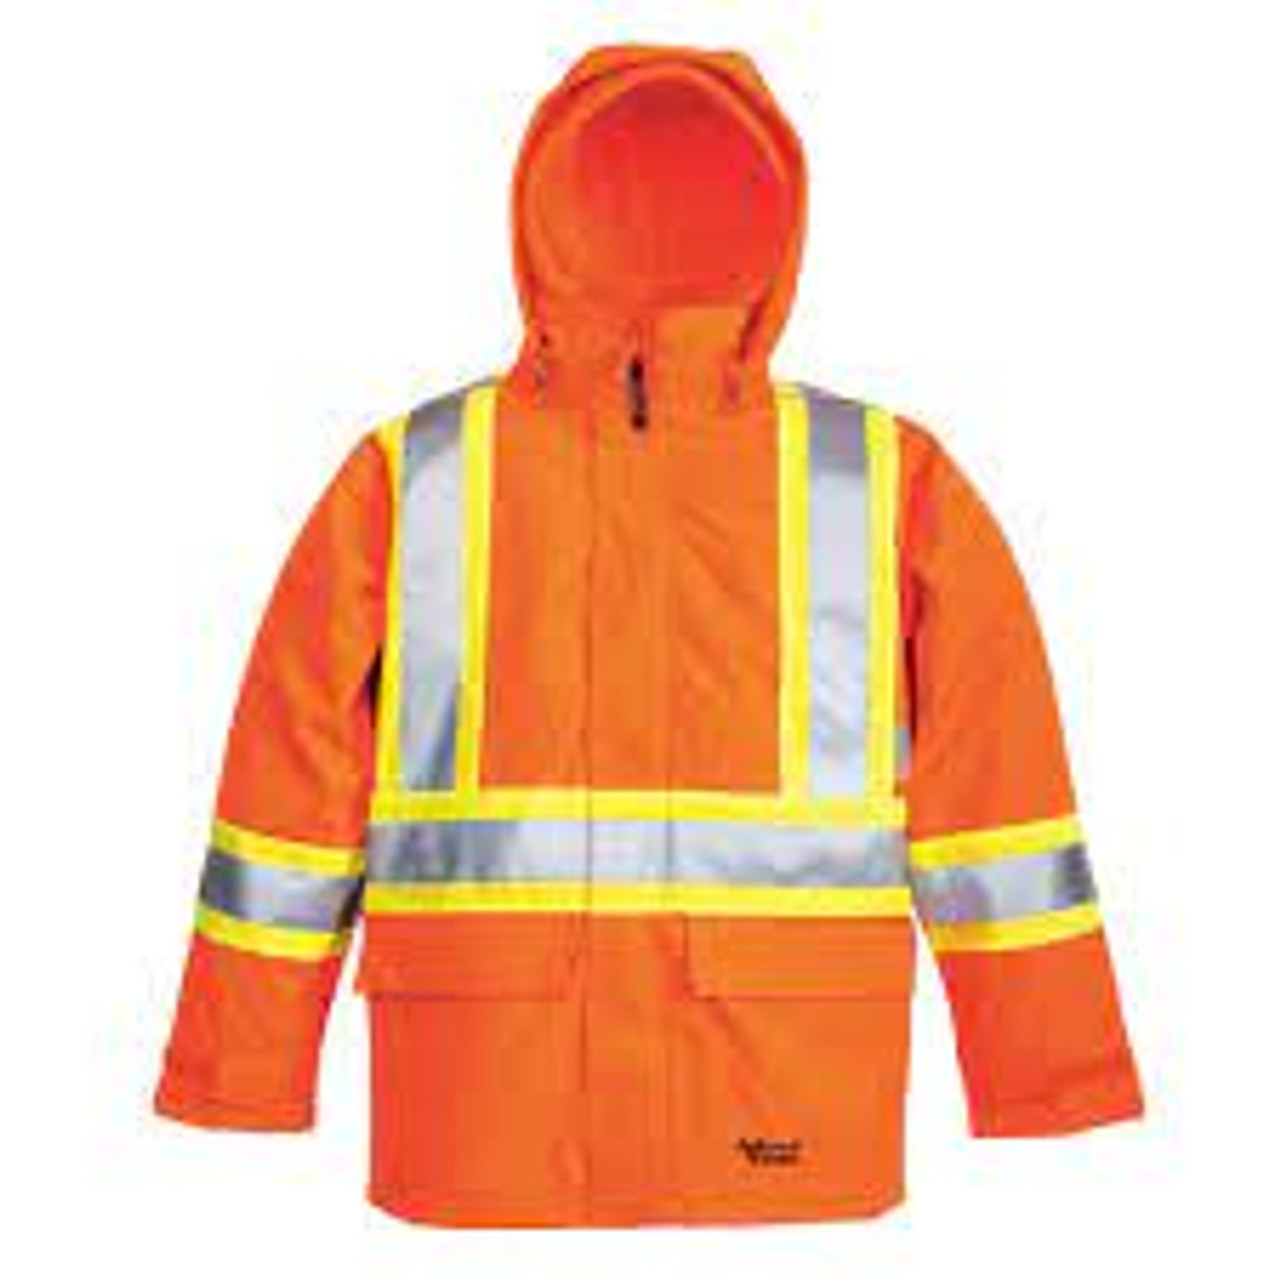 Veste sécurité 3 en 1 Journeyman, Polyester, Orange haute visibilité, Taille Grand 6400JO-XL